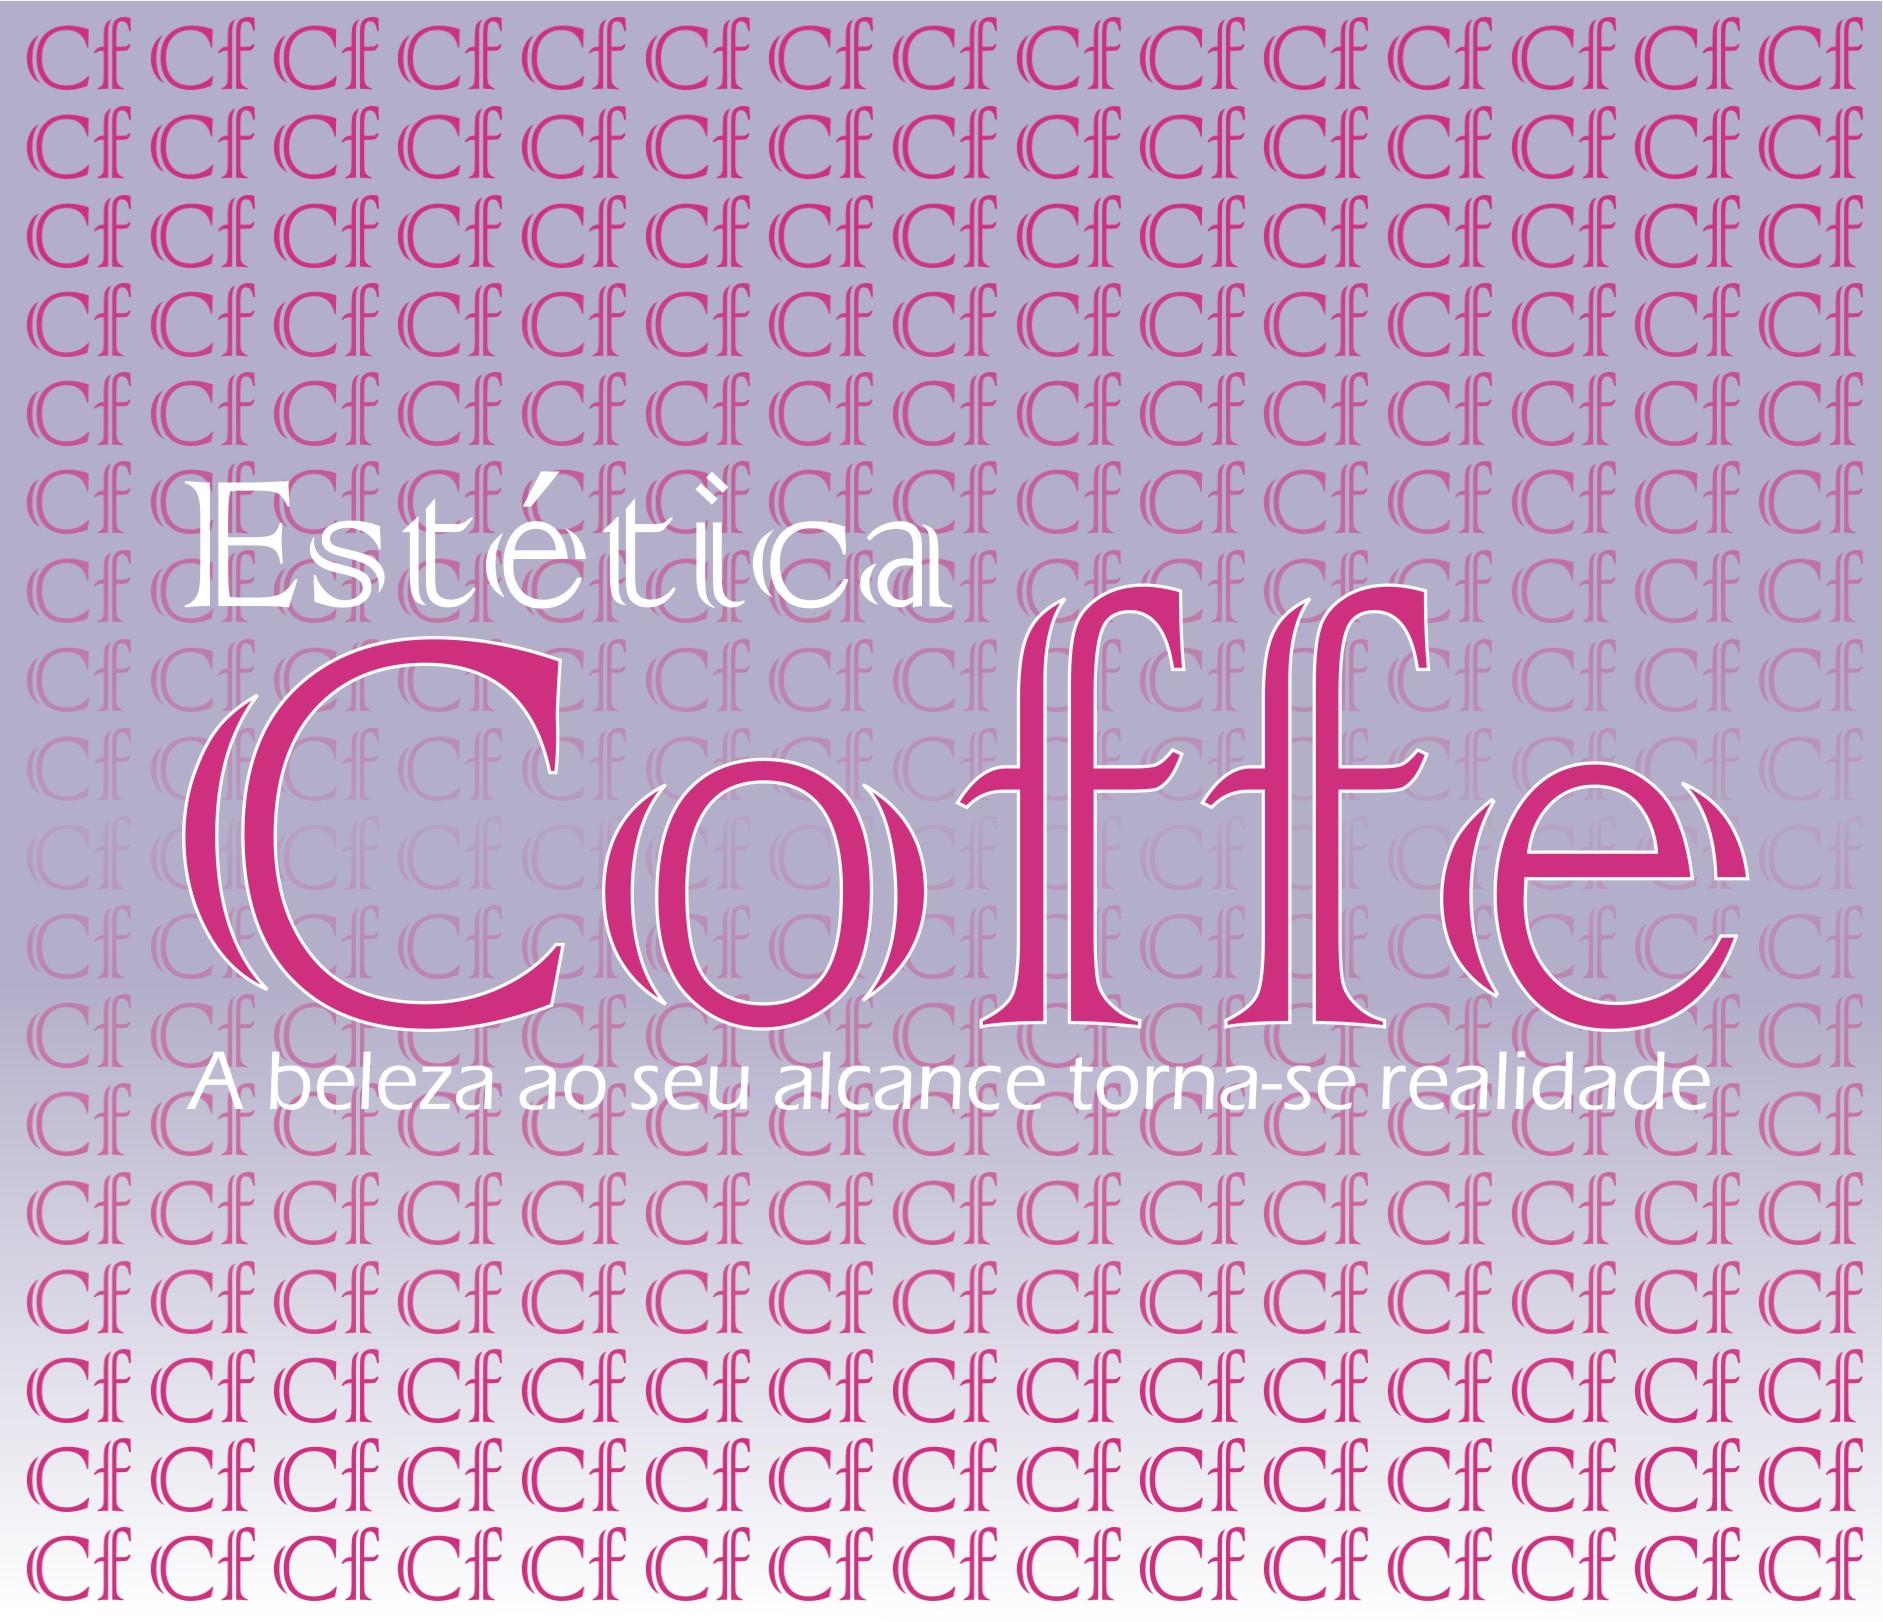 Estética Coffe